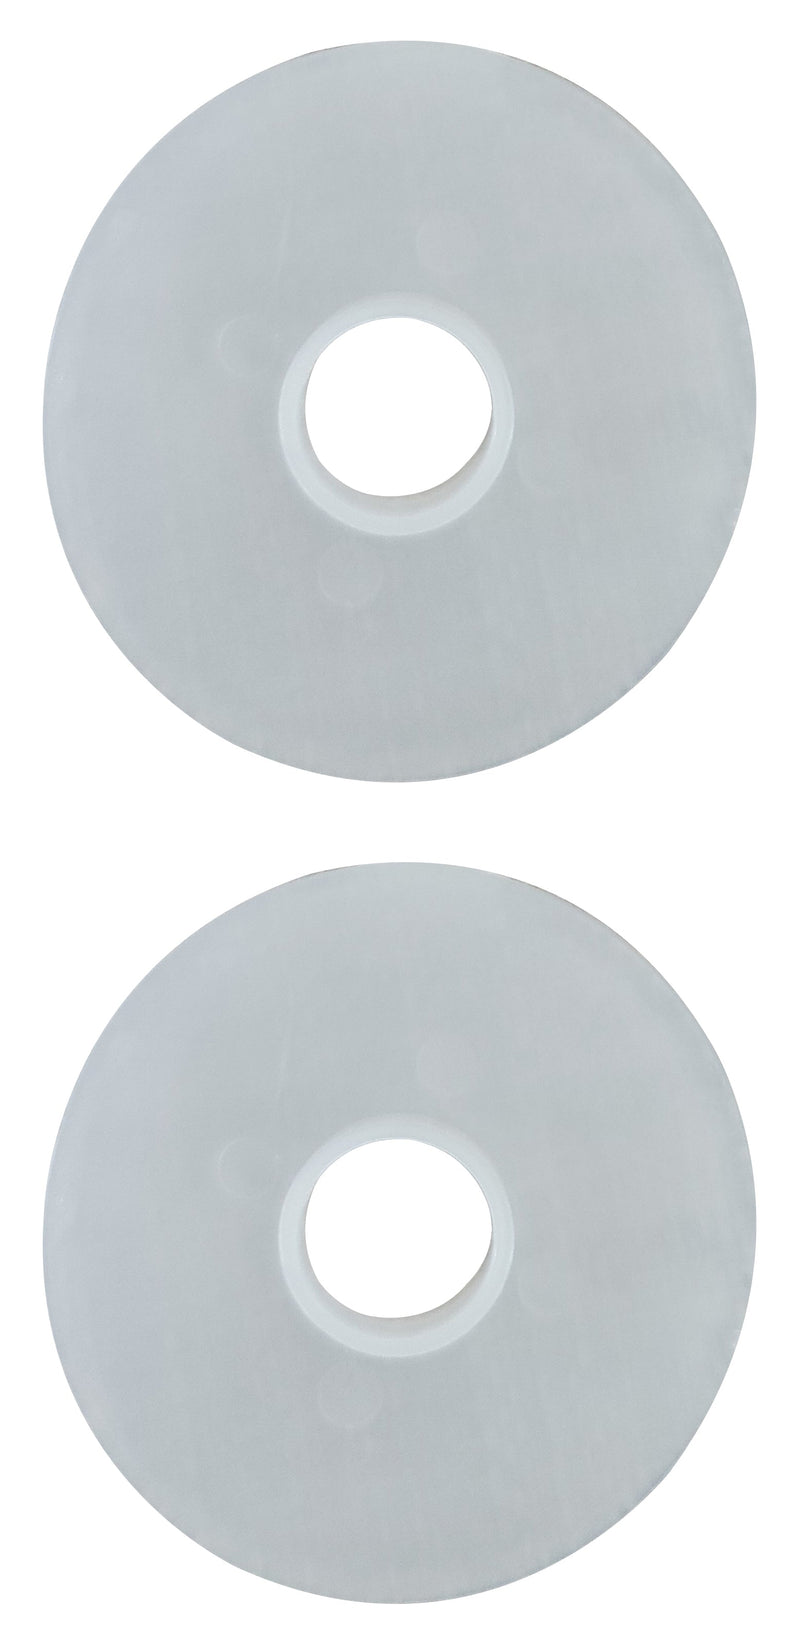 ISOGAS2DW 白色塑料垫圈 2 英寸直径一对